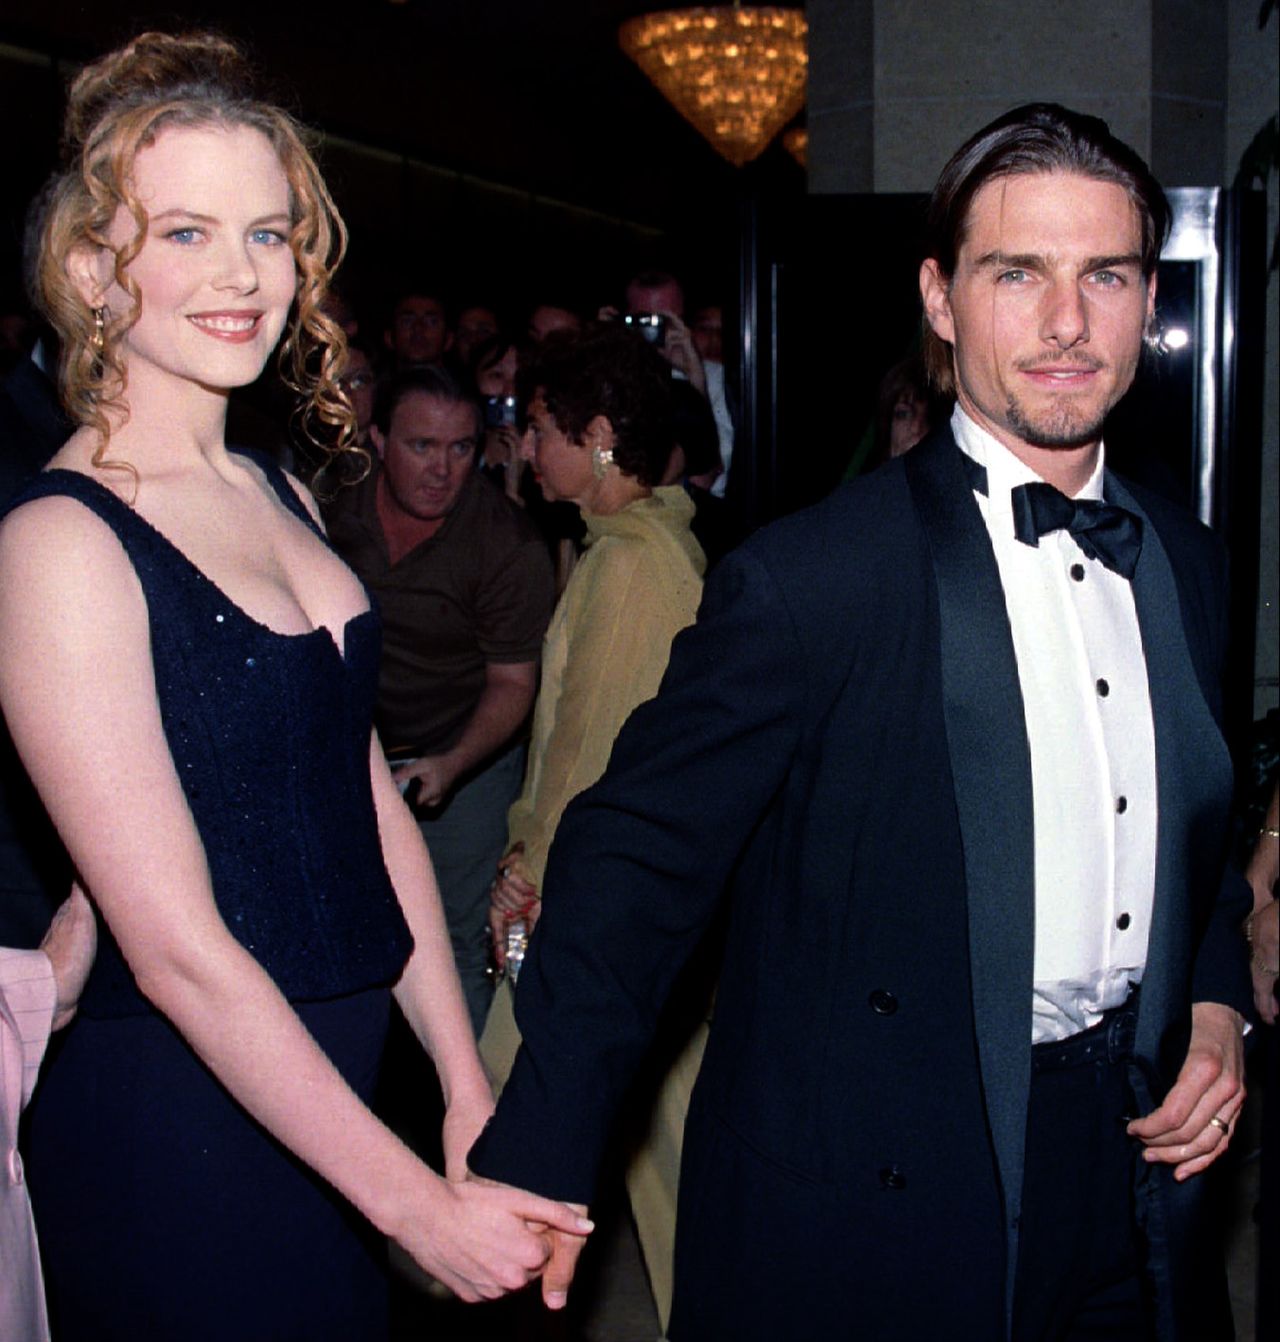 Nicole Kidman powiedziała, co się wydarzyło w jej małżeństwie. Tom Cruise ją ochraniał